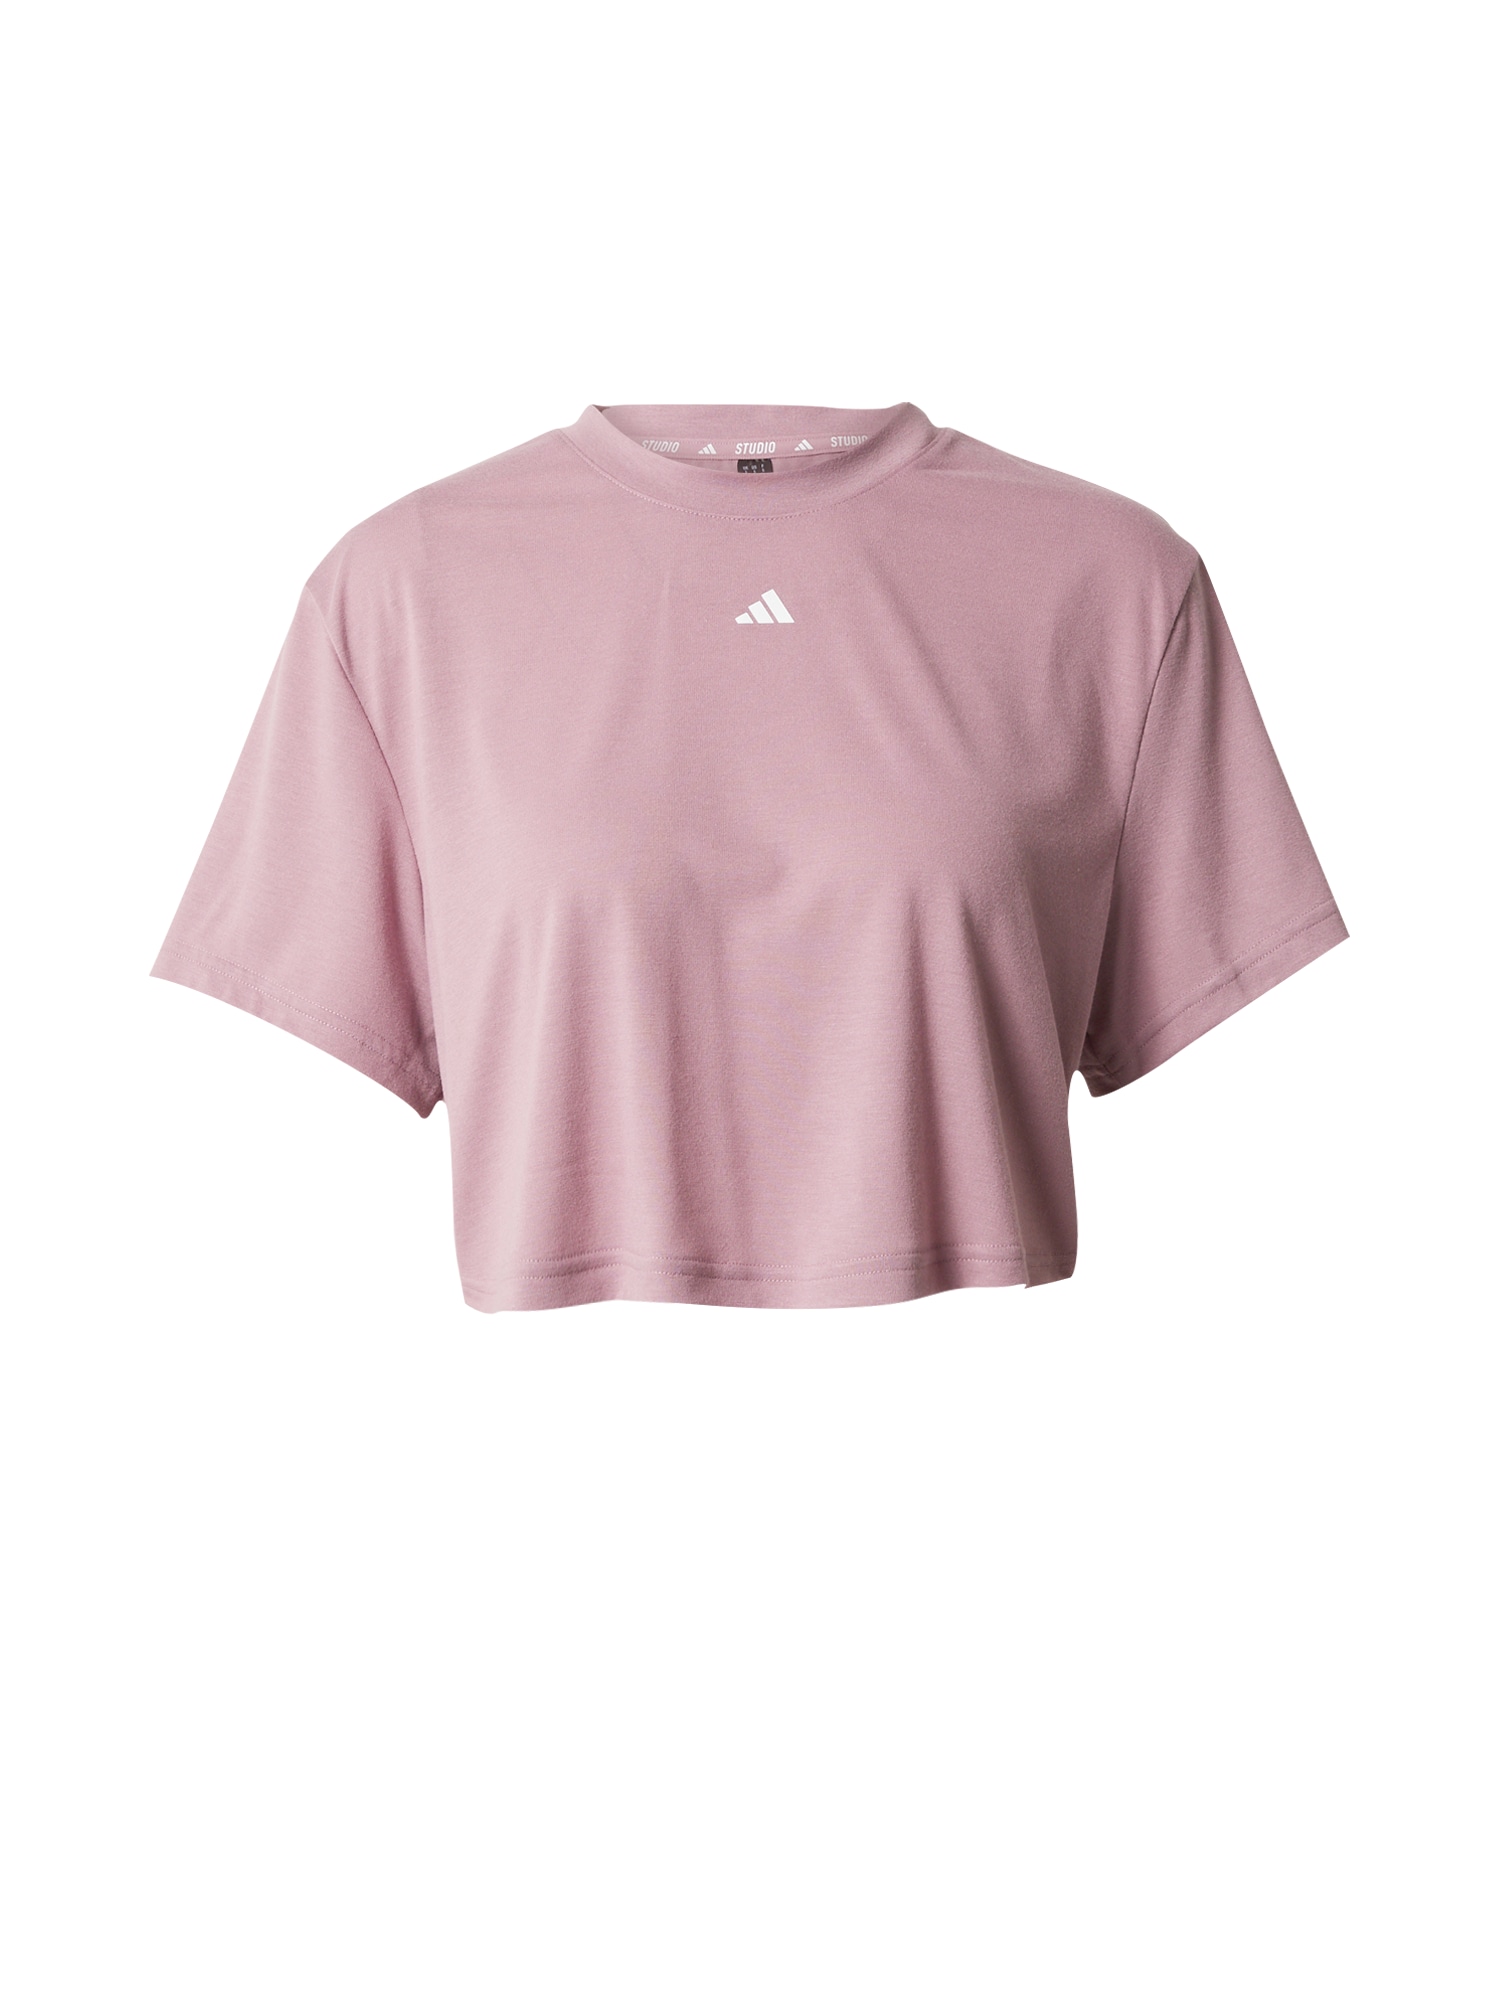 ADIDAS PERFORMANCE Sportiniai marškinėliai 'Studio' rausvai violetinė spalva / balta